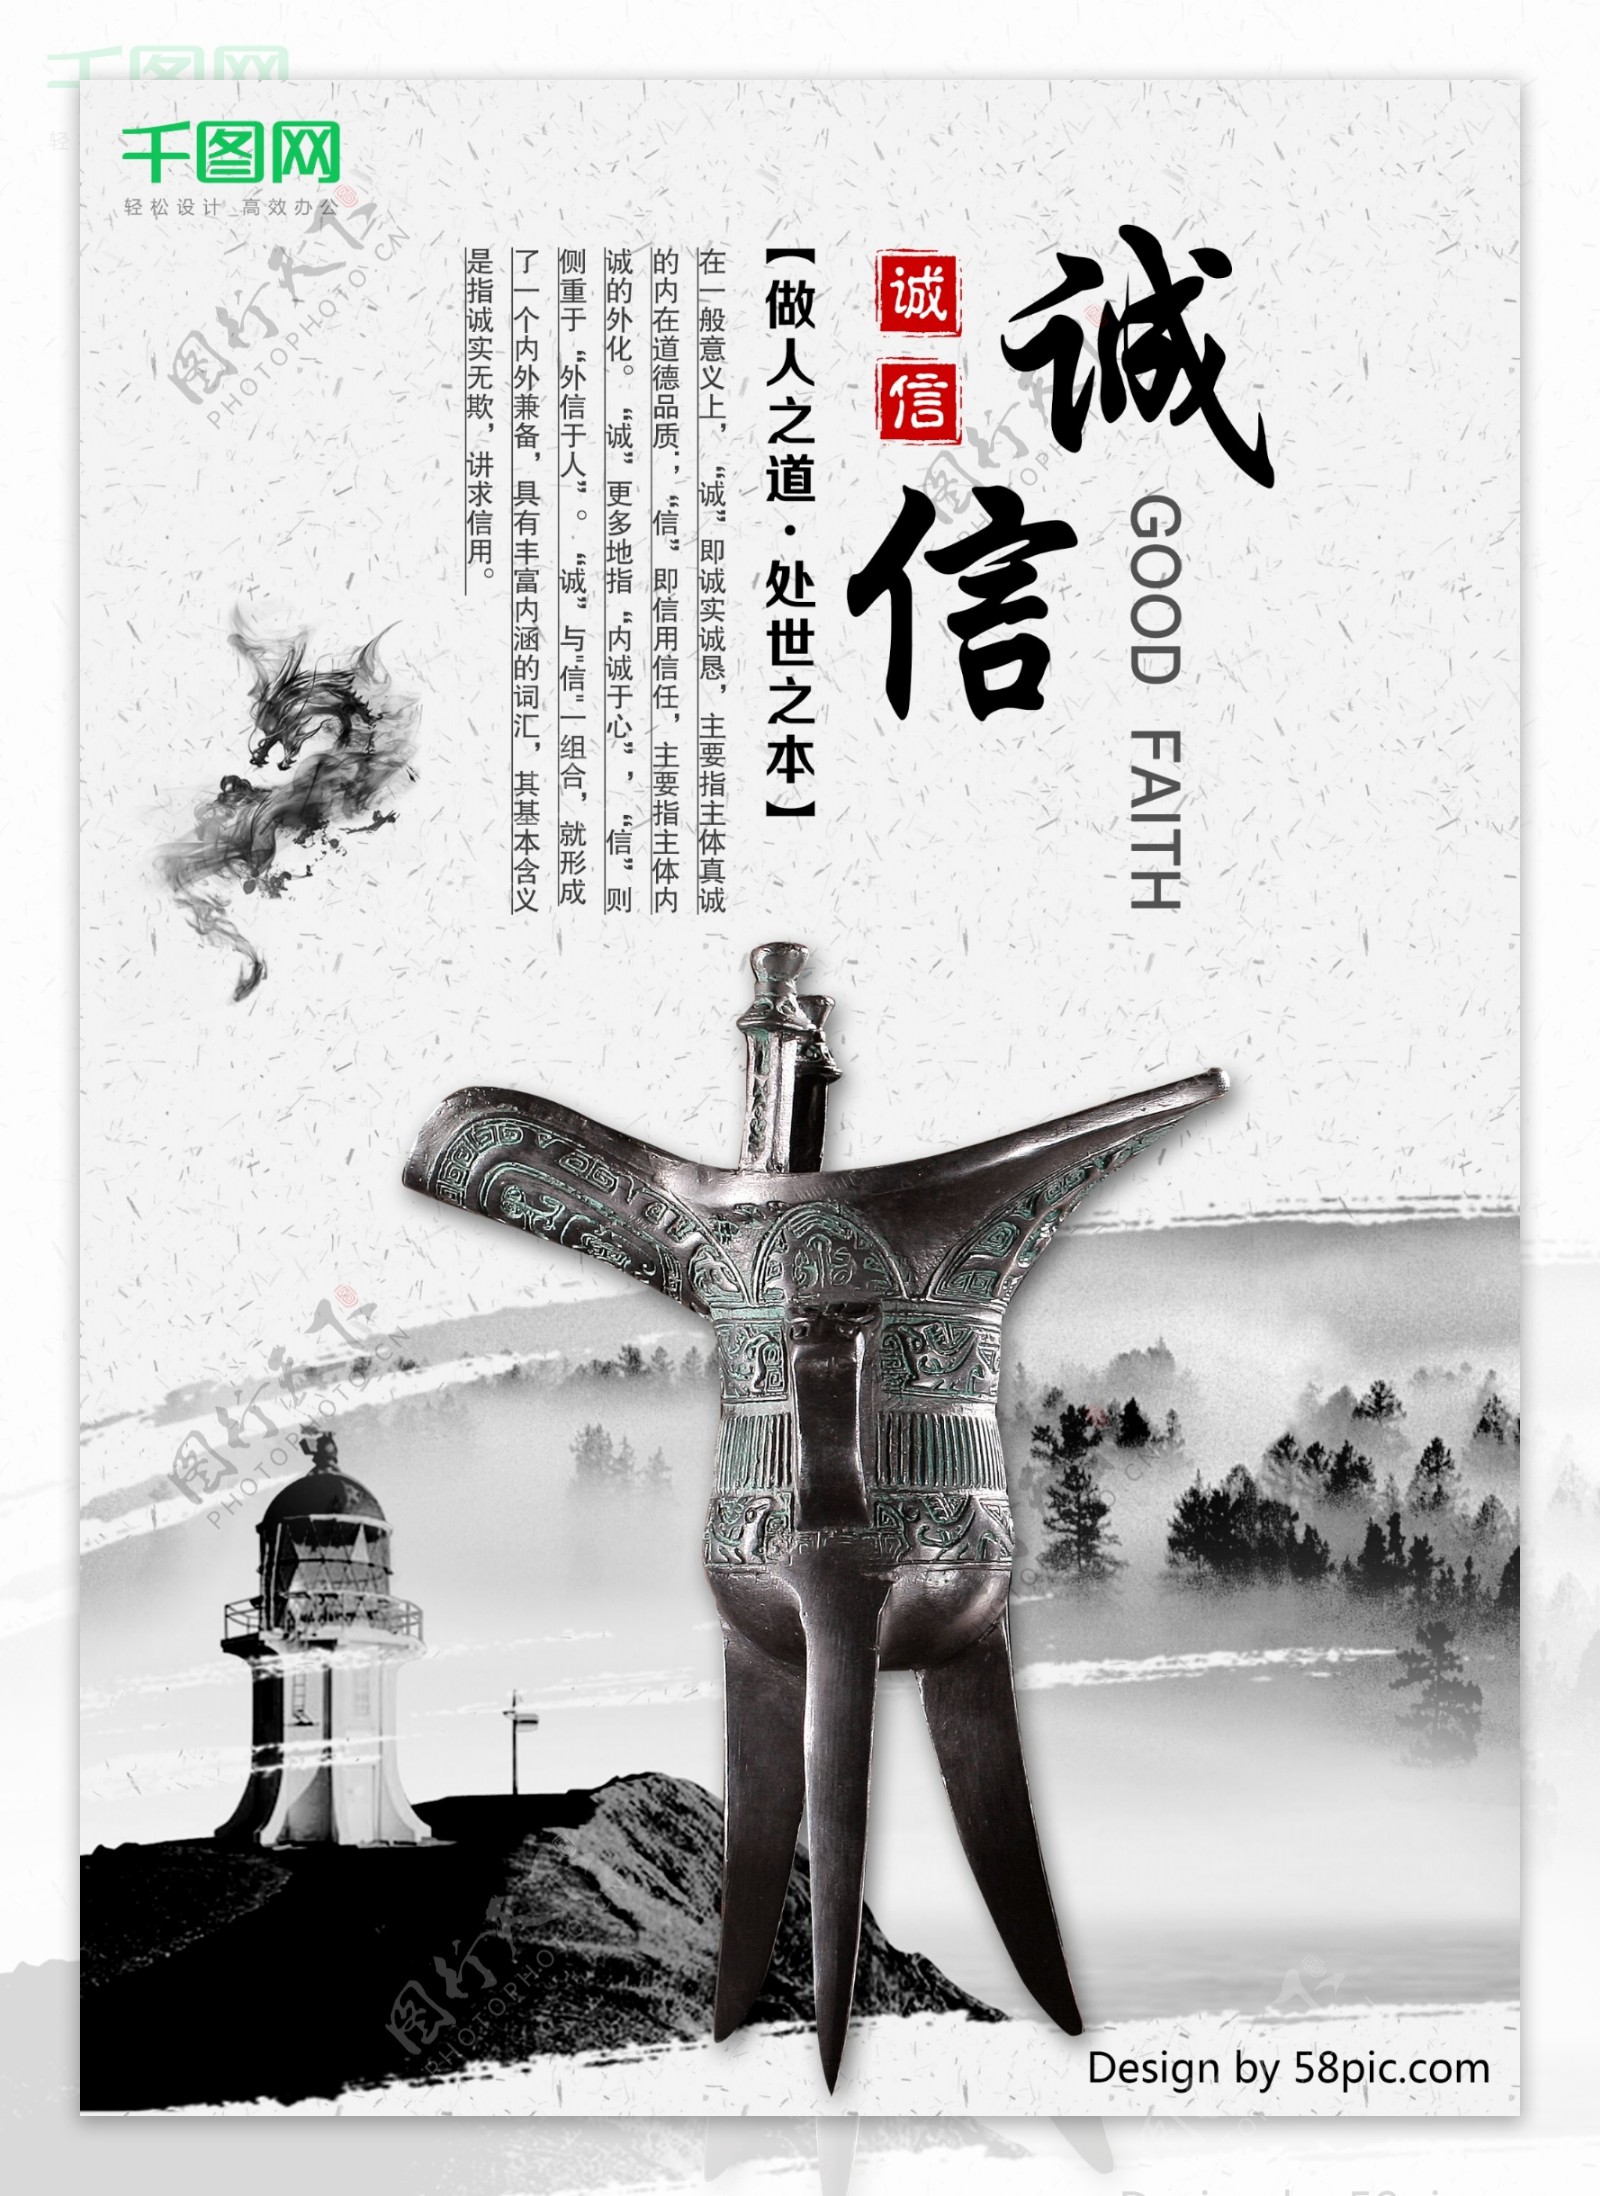 中国风企业文化系列展板